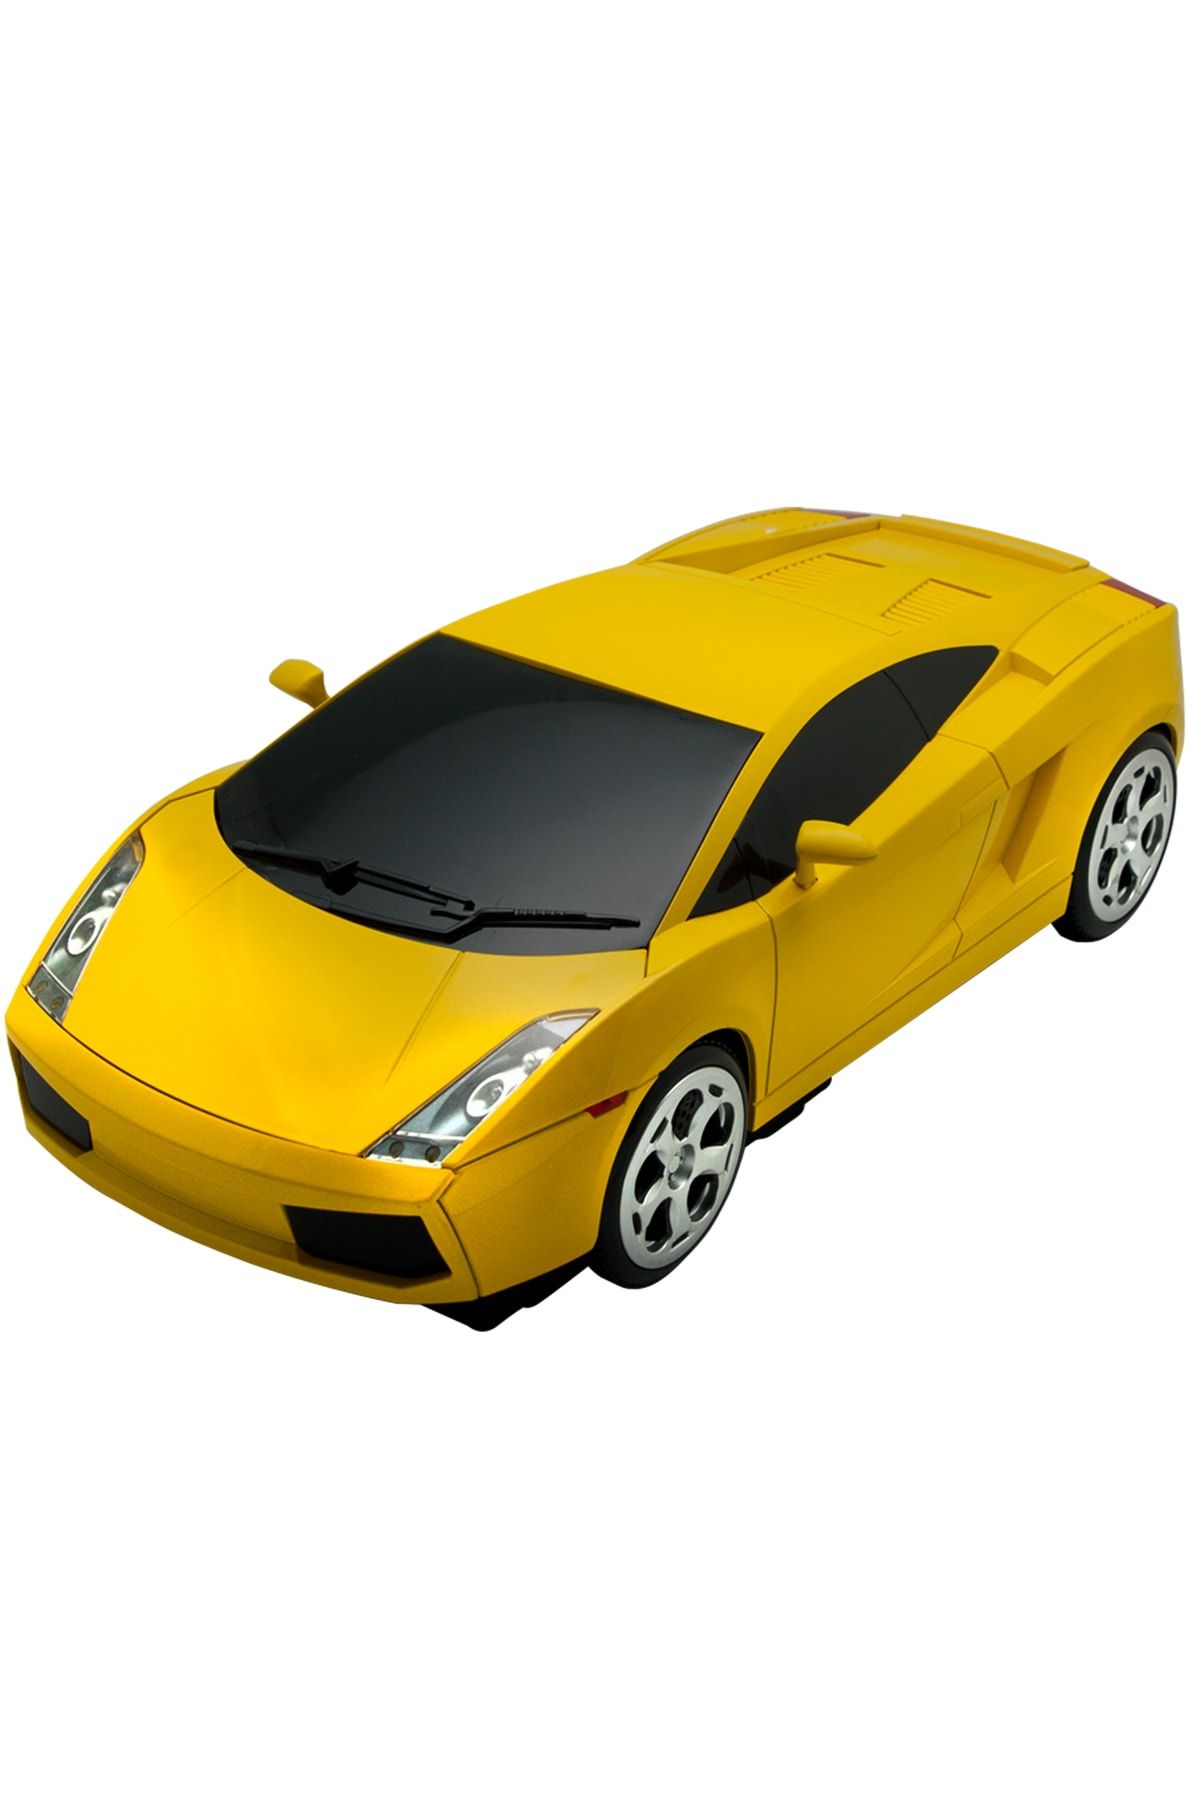 Nozamatech Dvd Okuyucu (player) - Lamborghini Model